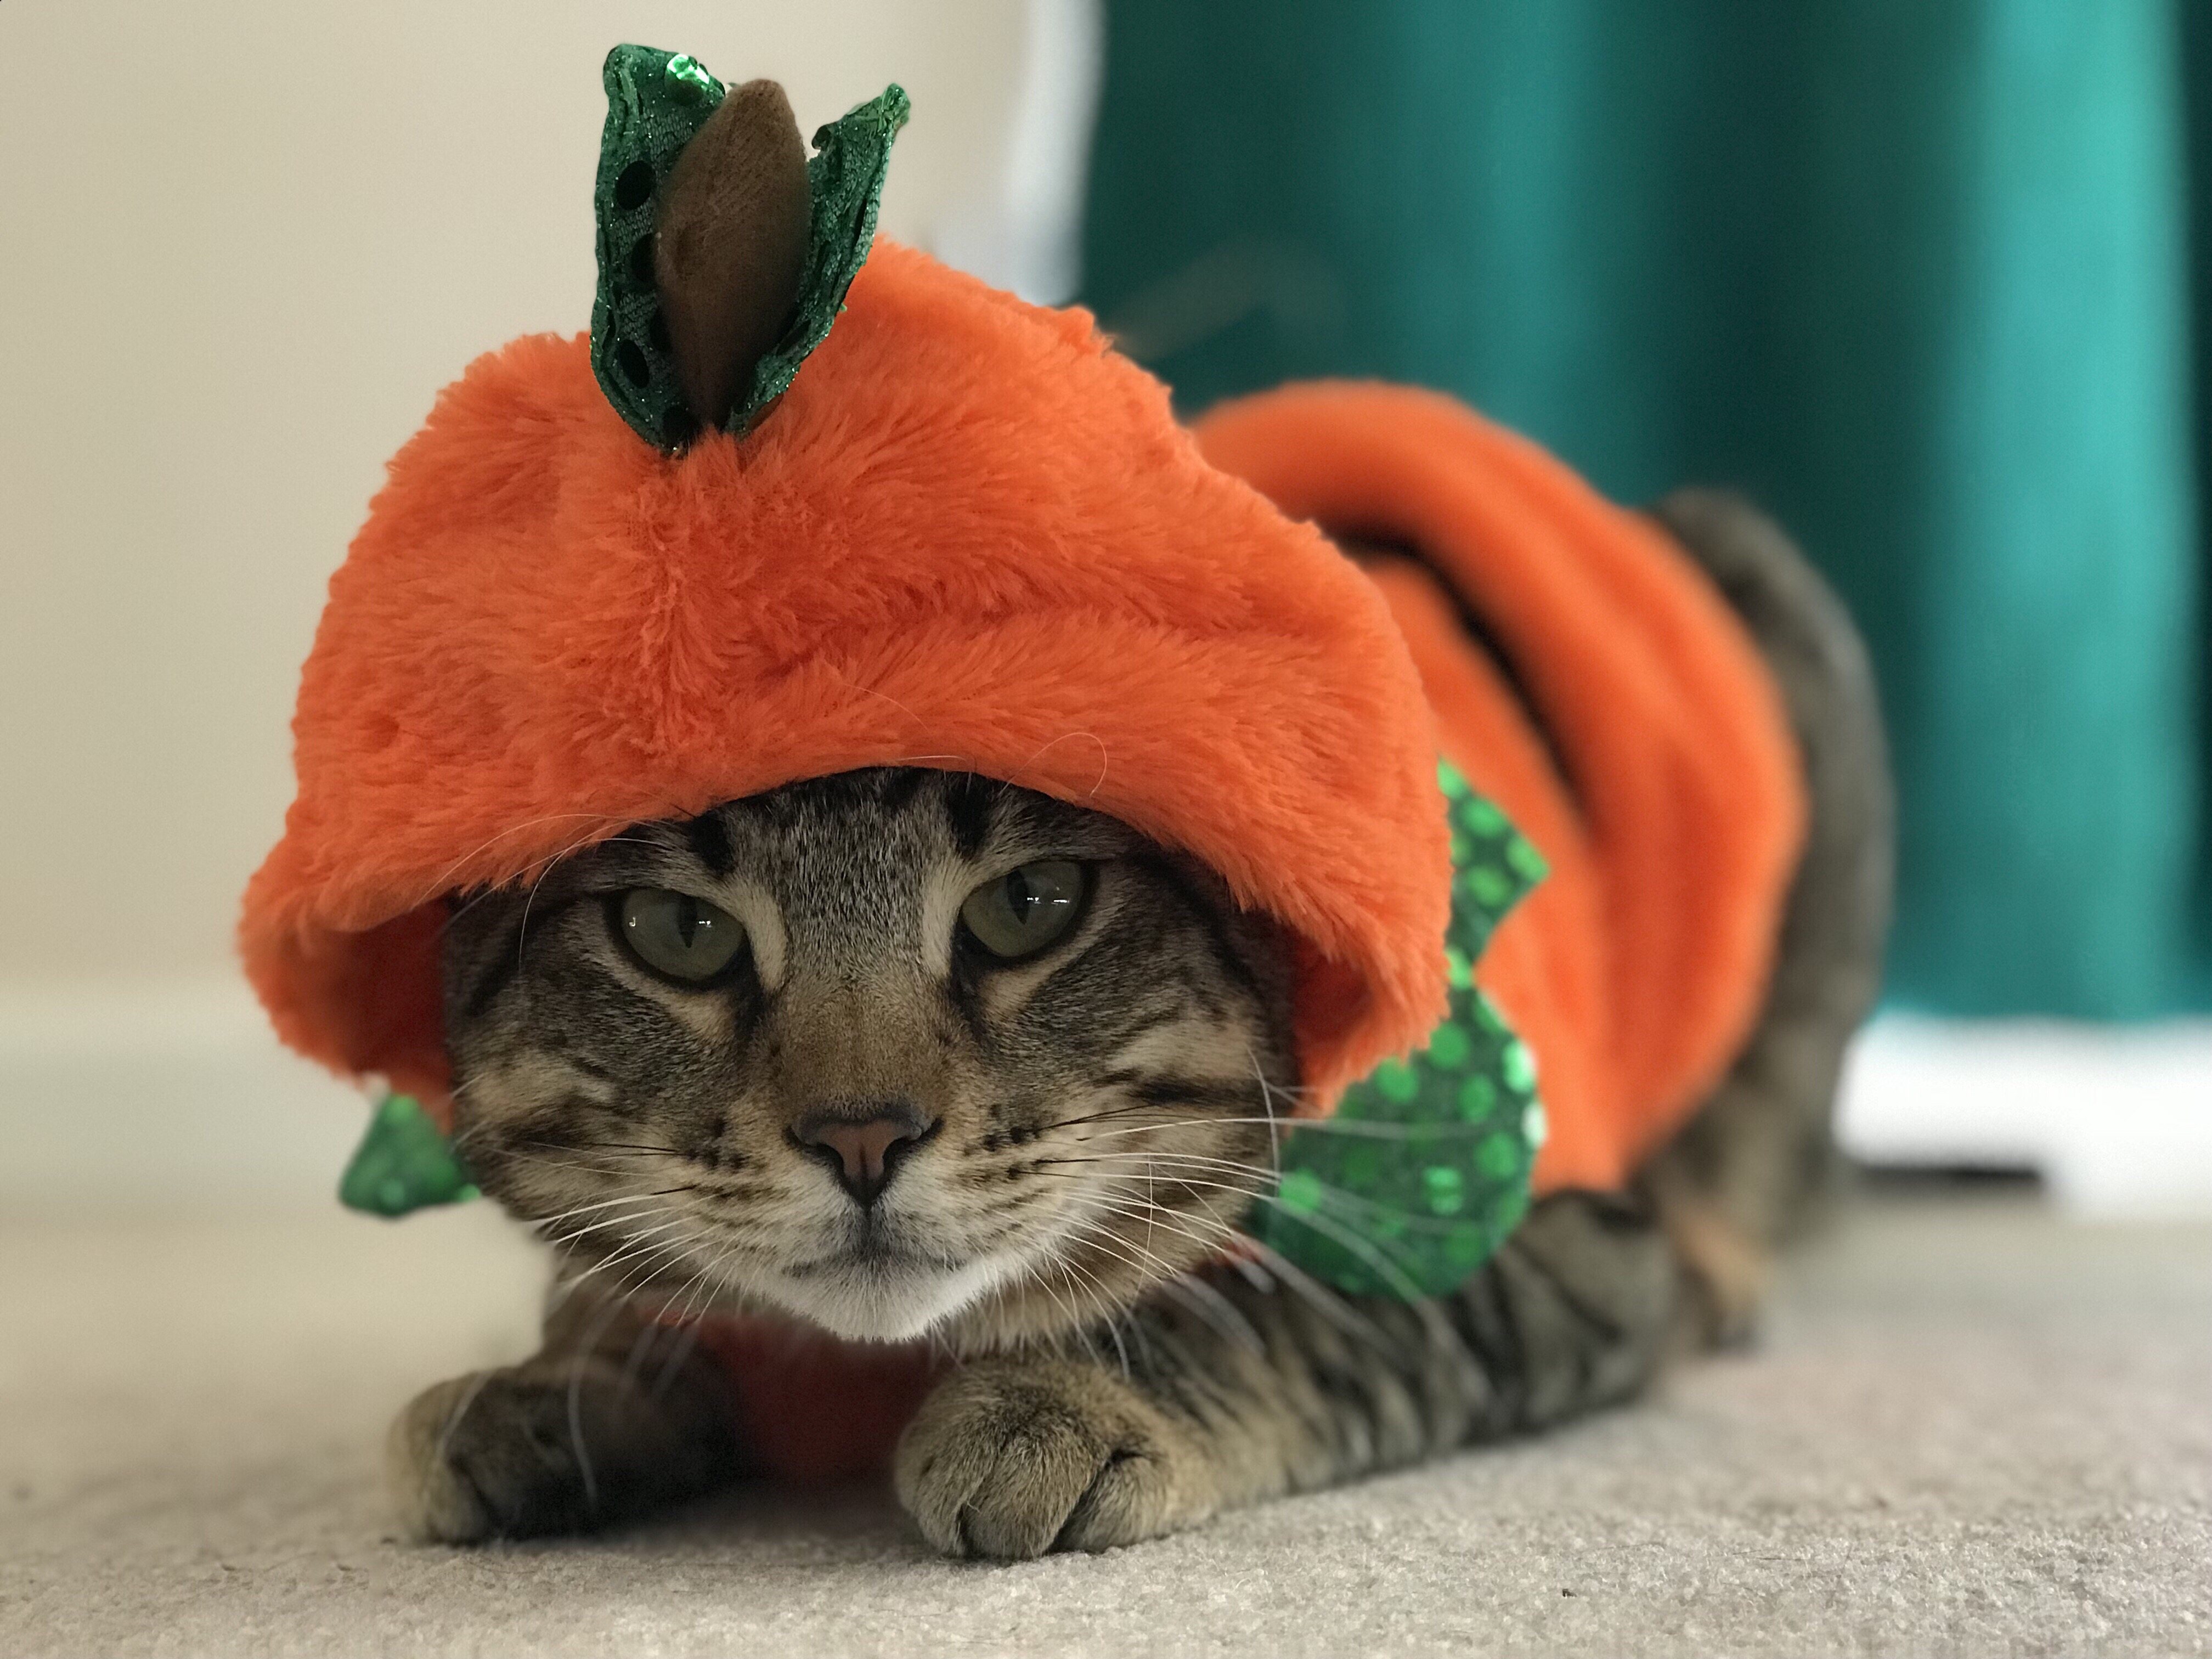 Los gatos también se pueden disfrazar en Halloween